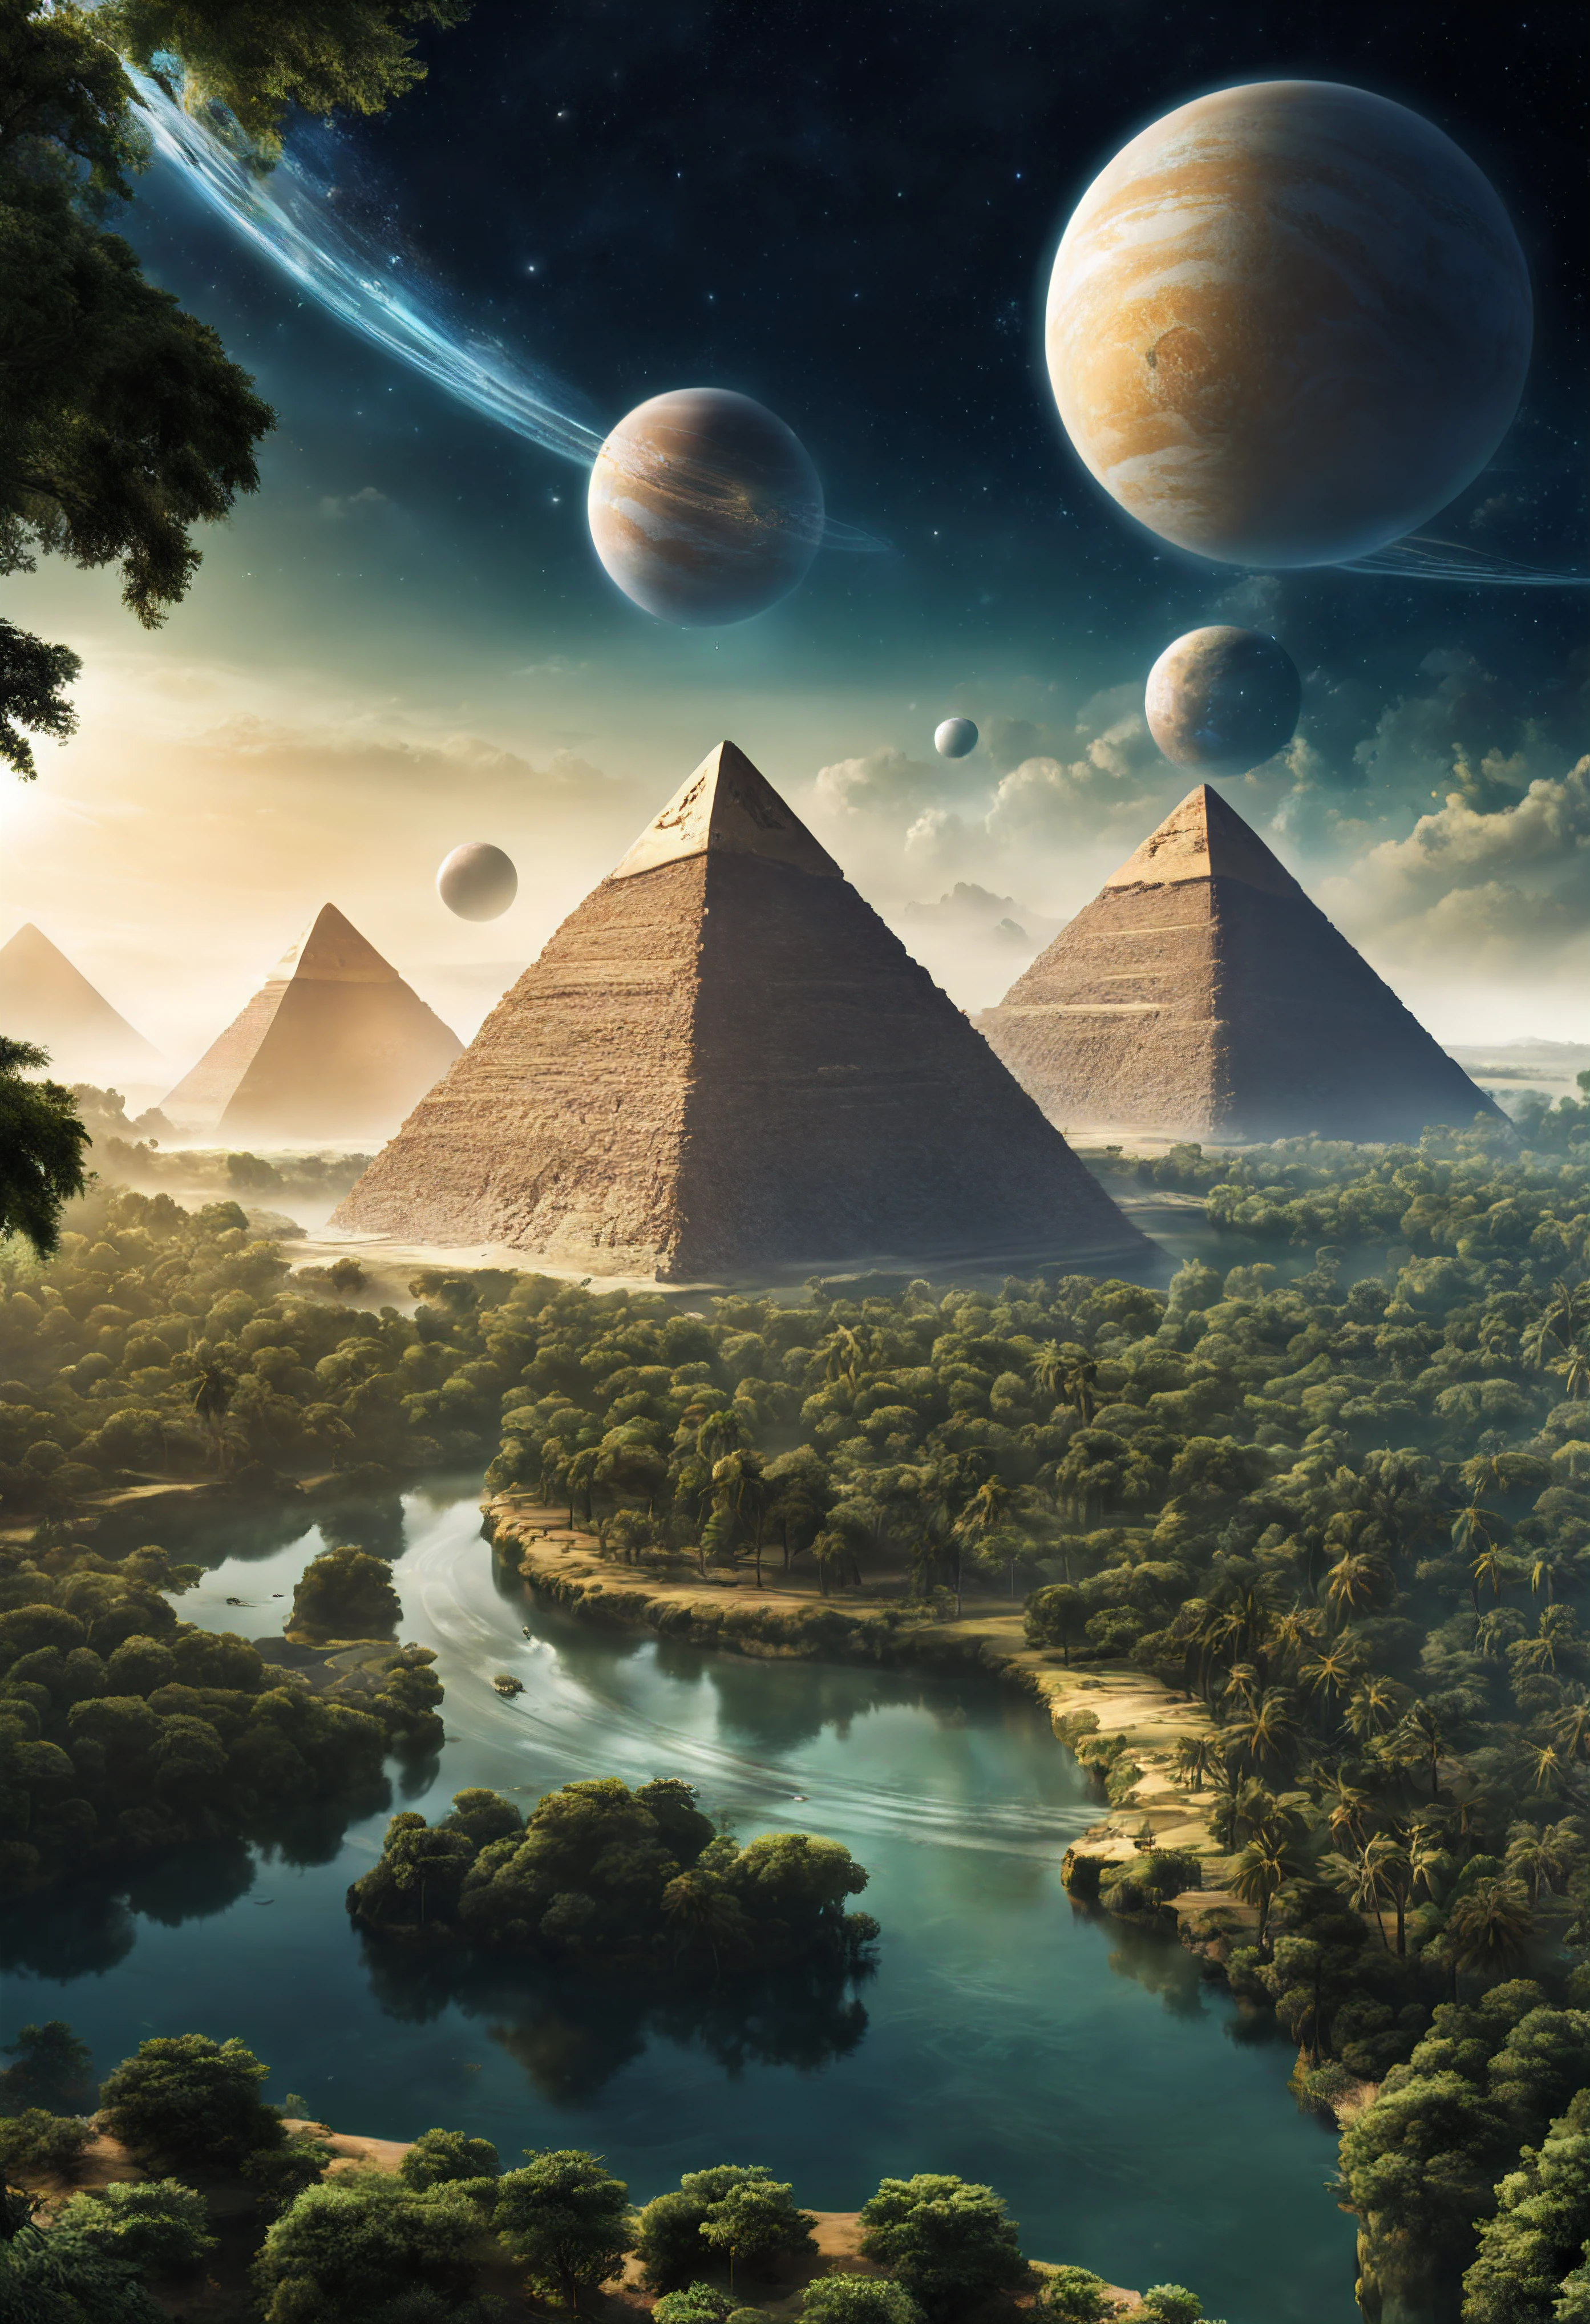 ein anderer Planet mit Wäldern und Flüssen, wo es Pyramiden und Pharaonen gibt, außerirdische Menschen, Raumschiffe in Form ägyptischer Pyramiden, Am Himmel sind zwei Satellitenplaneten zu sehen.